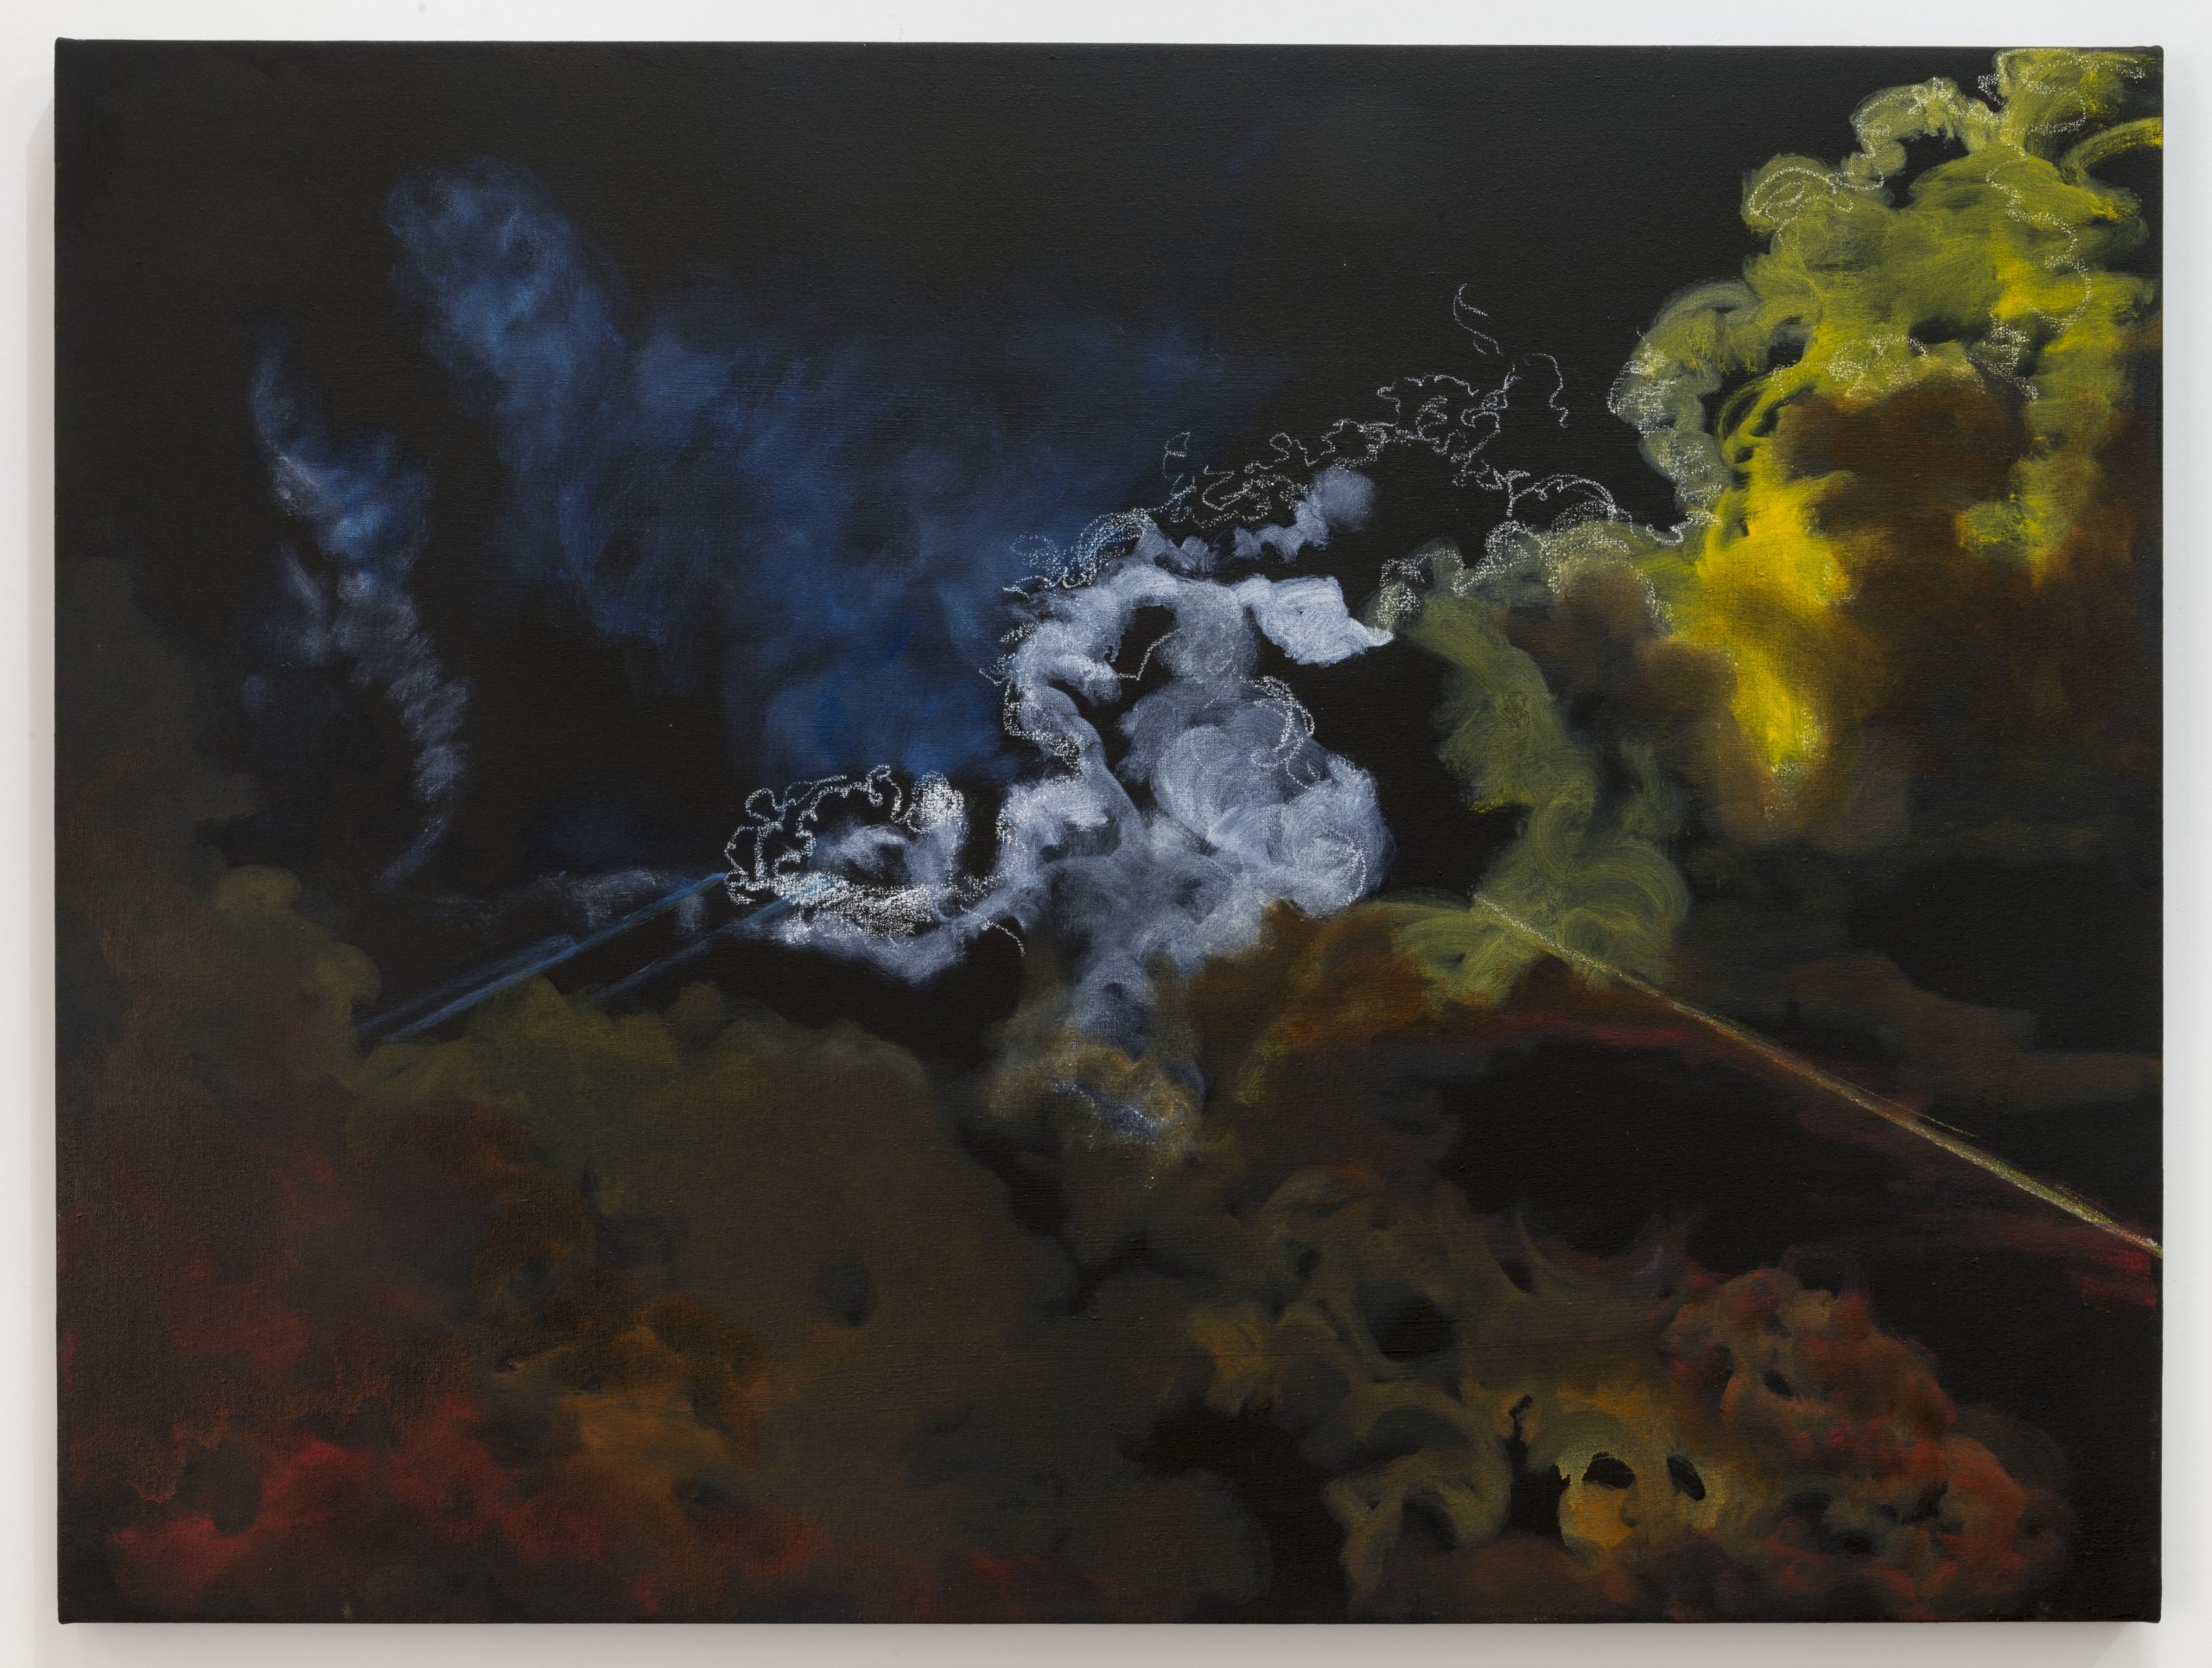 サンディロドリゲス、催涙ガスNo. 5（ファーガソン）、2015年。キャンバスに油彩。 36 x48インチ。アーティストの礼儀。写真：Joshua White / JWPictures.com